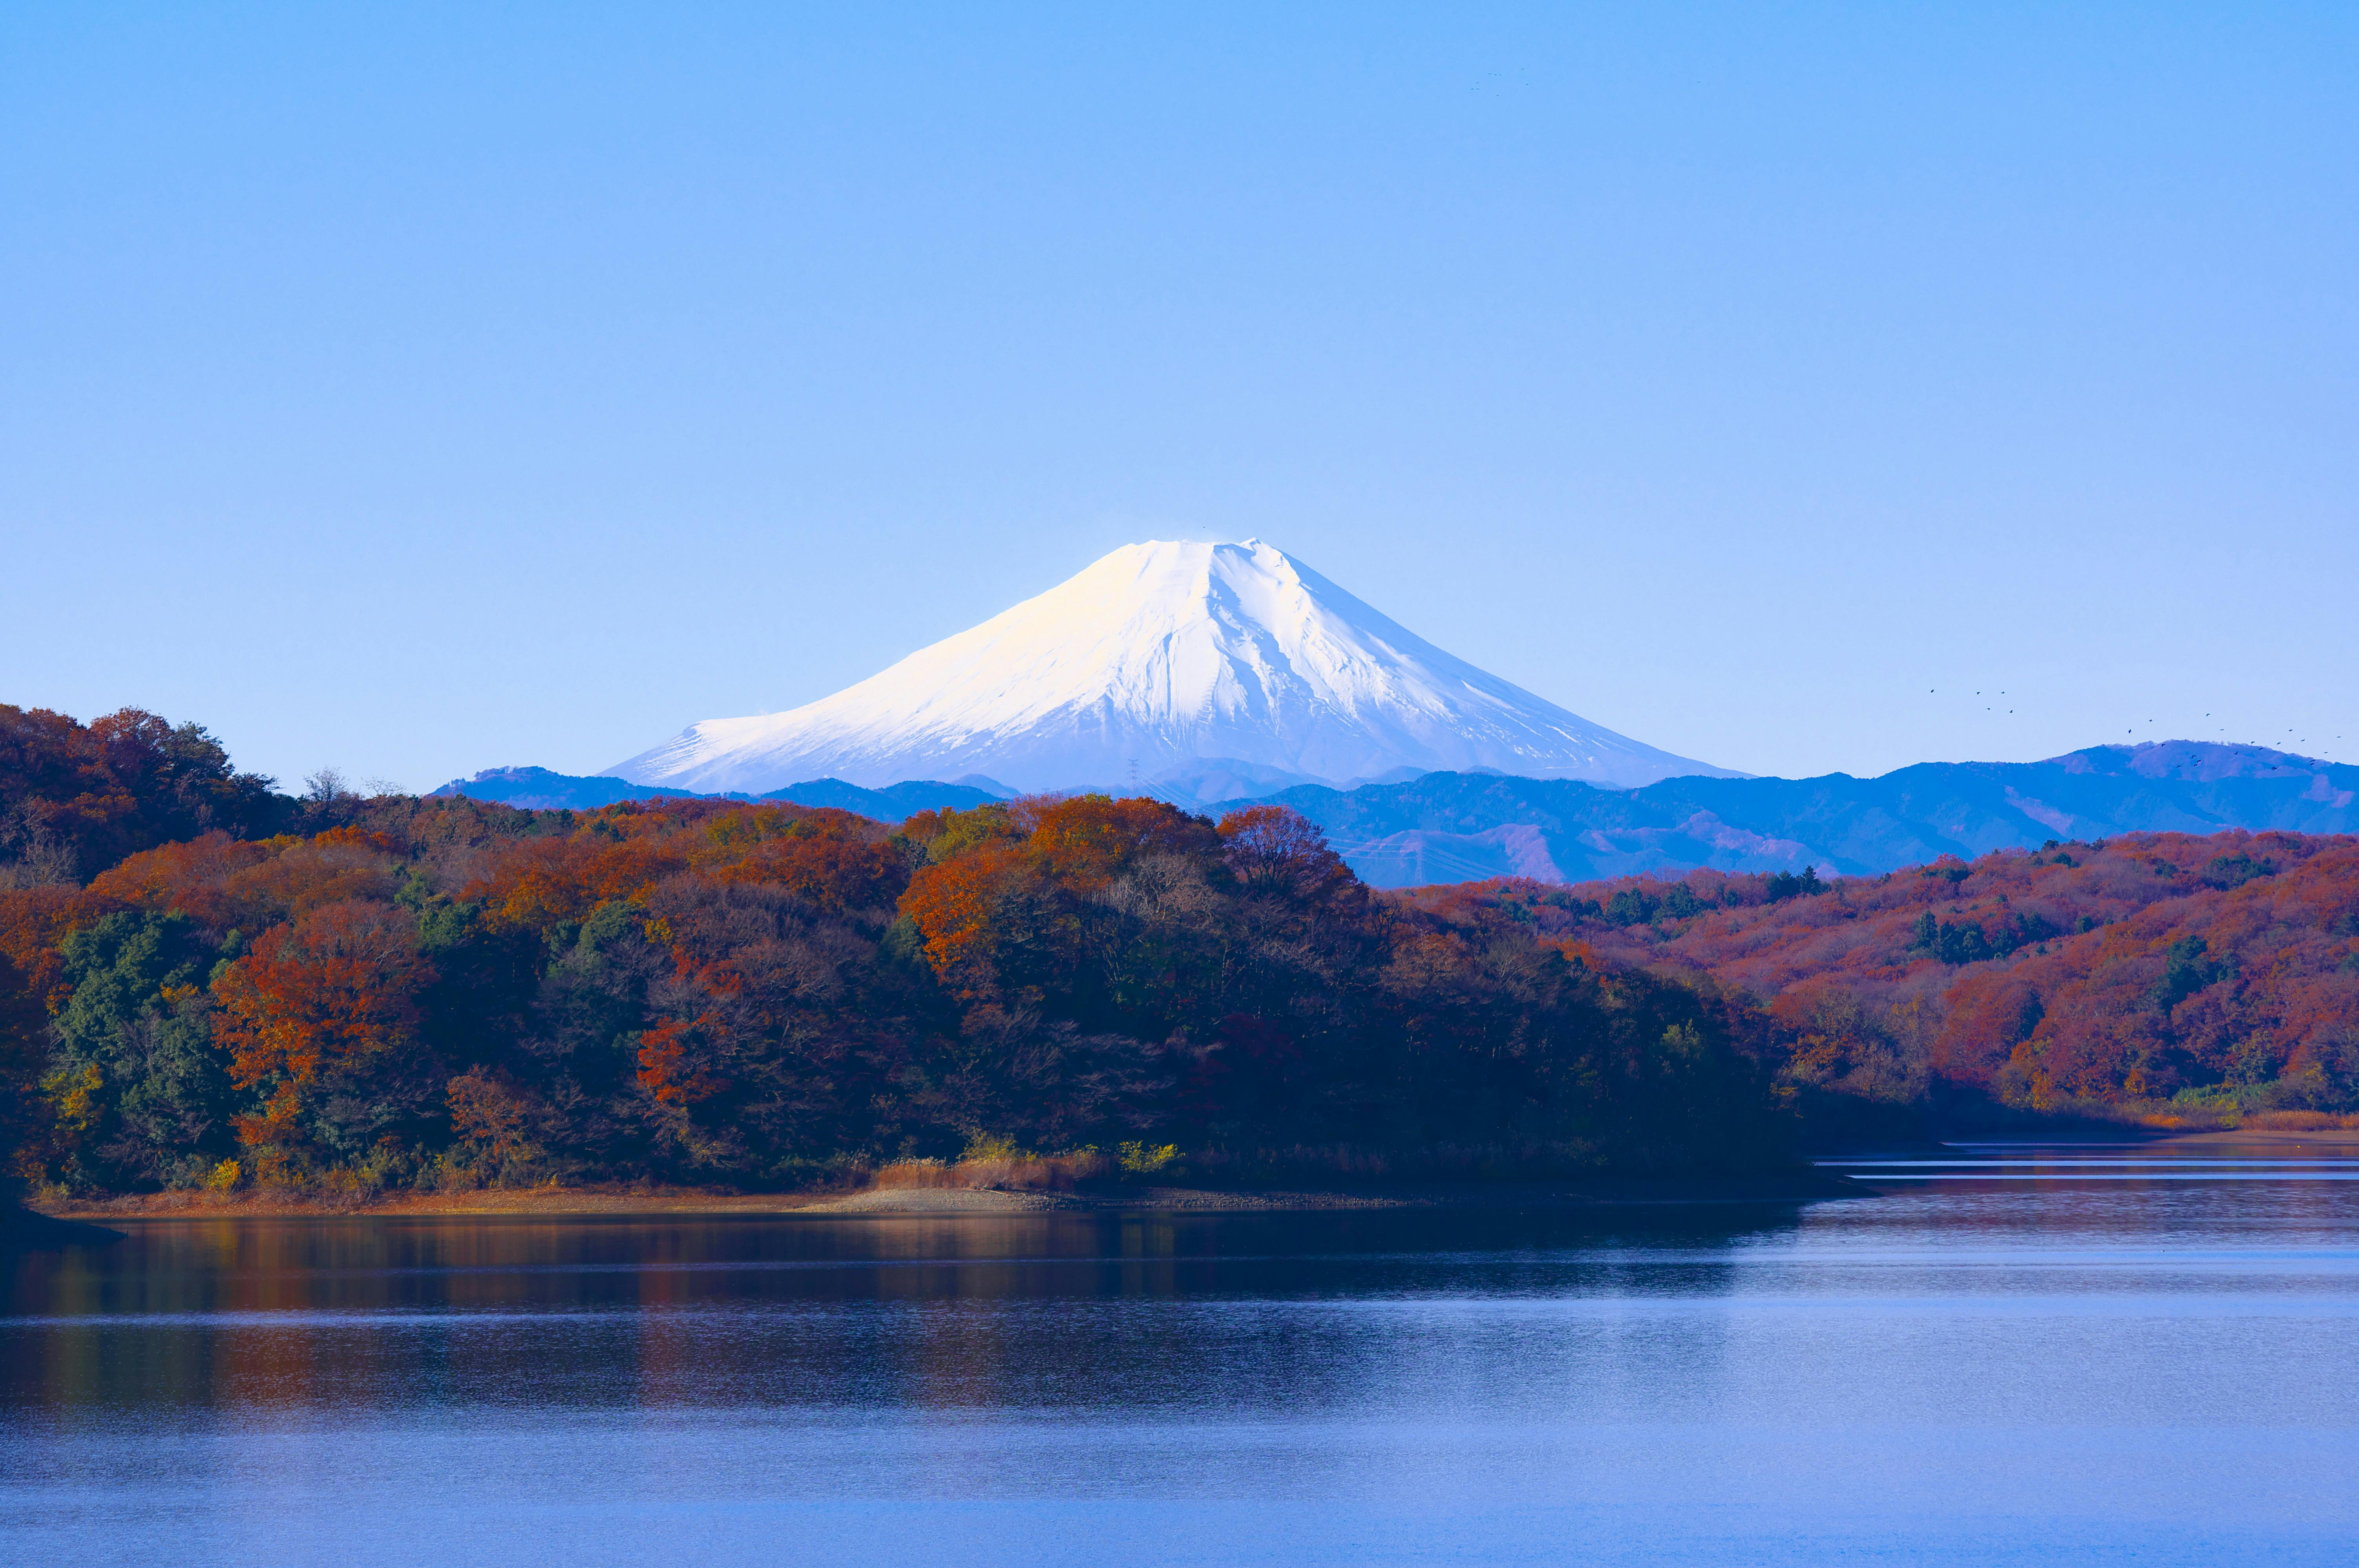  Mount  Fuji  Japan  Free Stock Photo